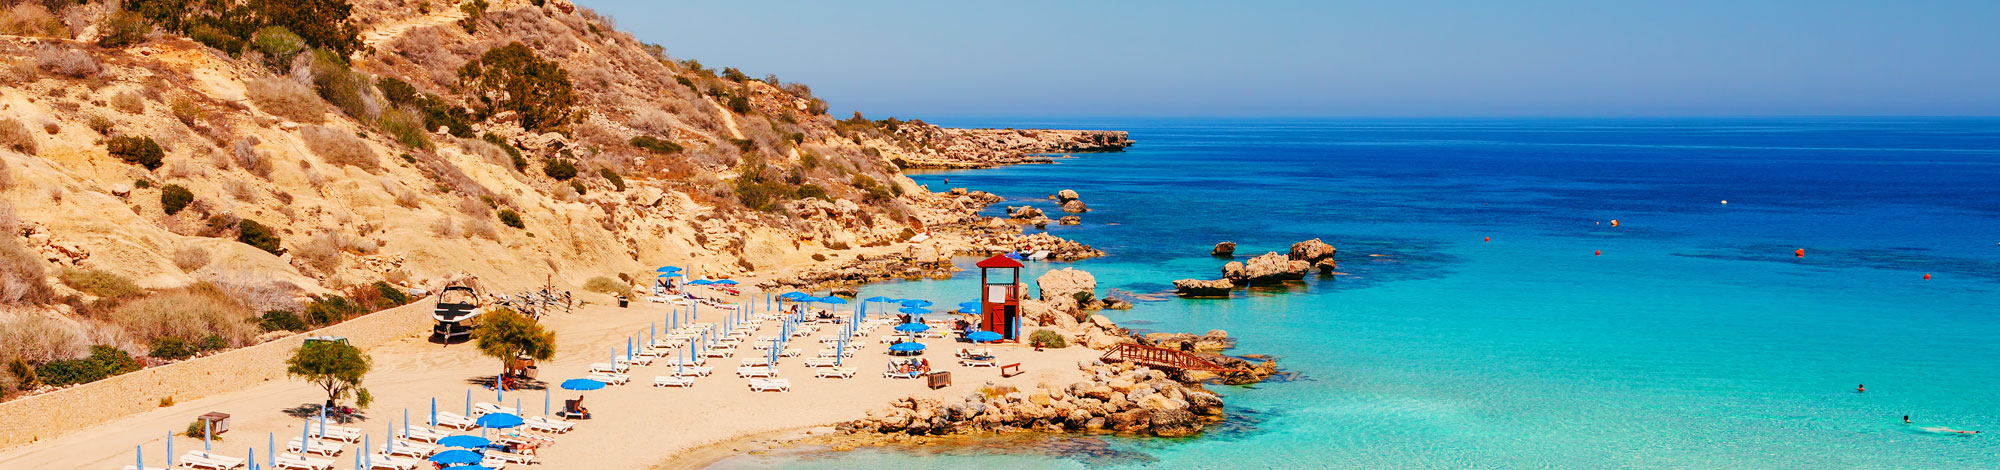 Urlaub in Zypern